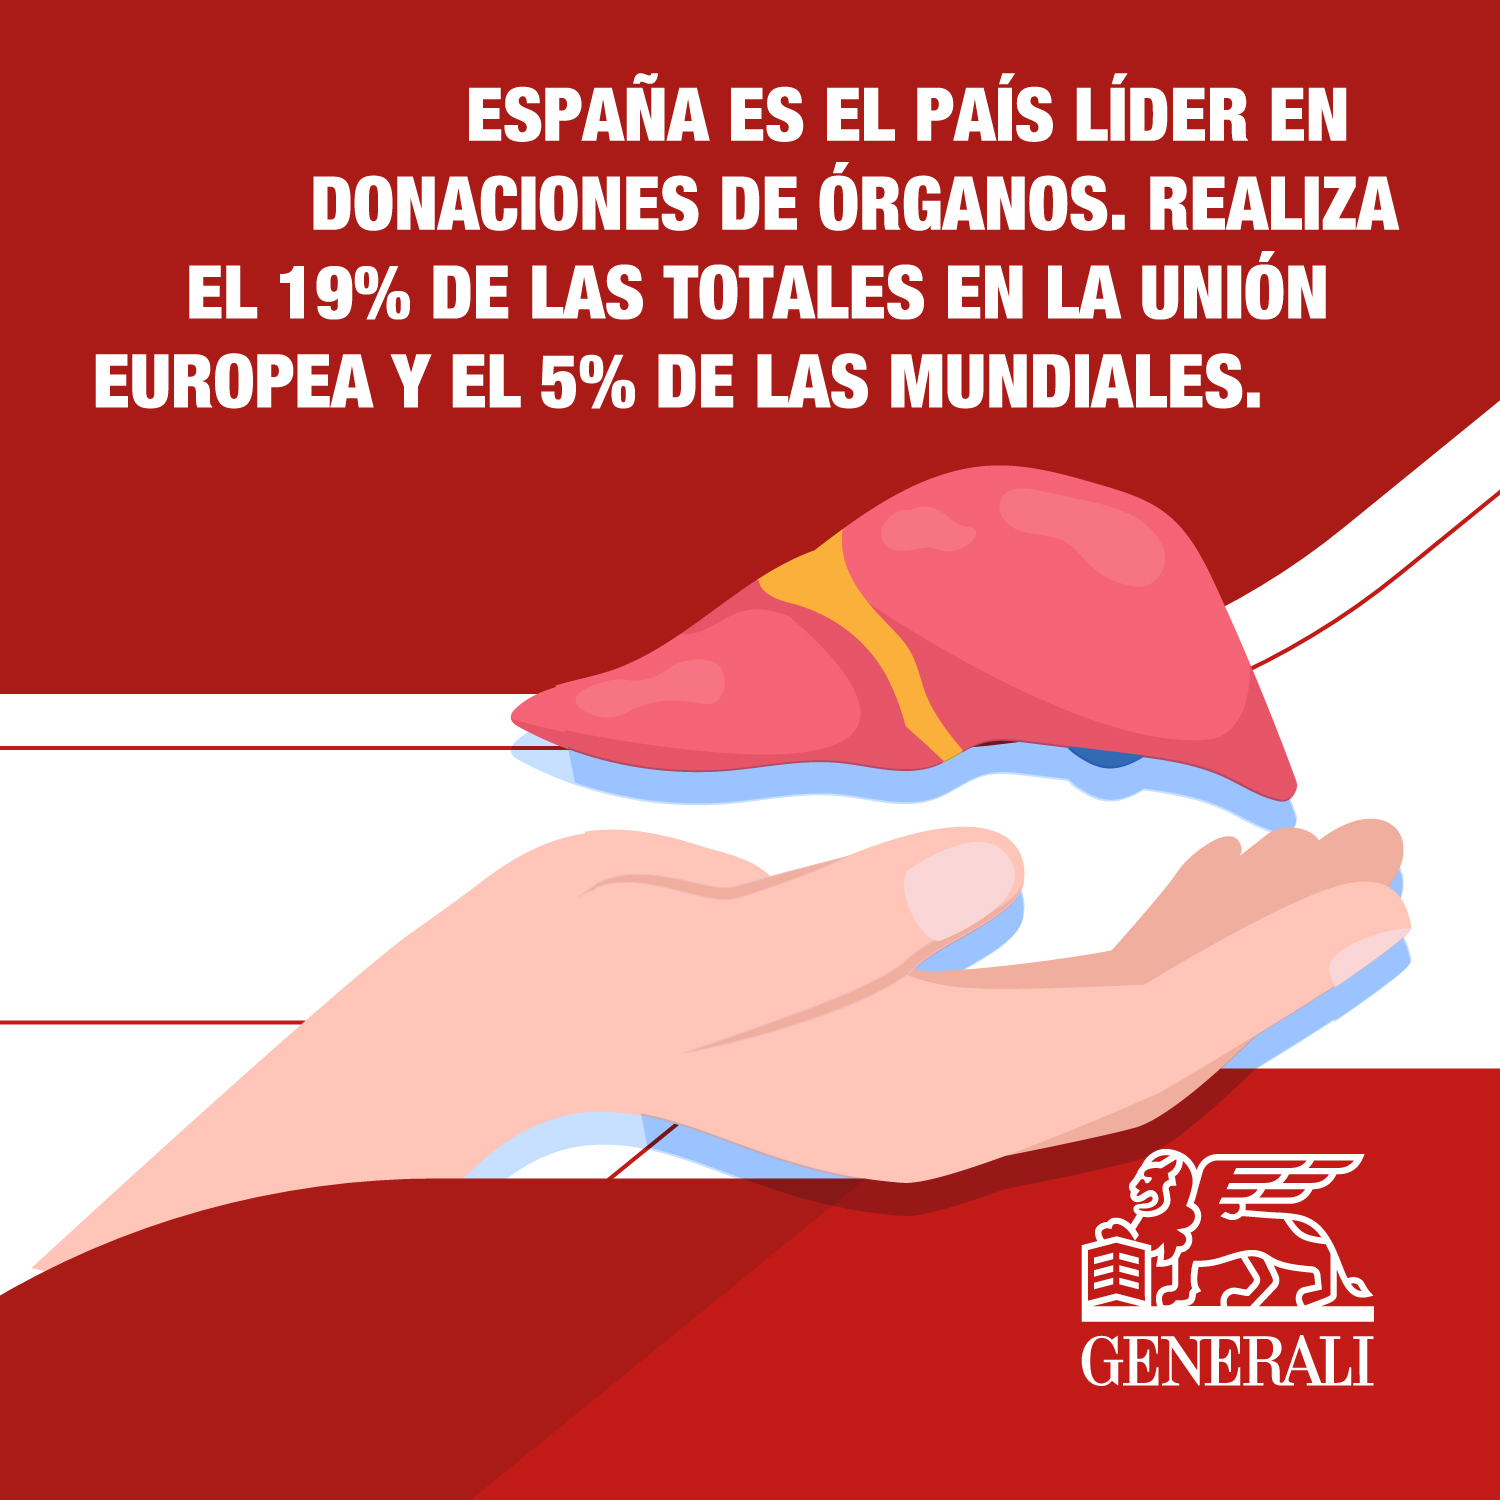 1562466_Generali-Spain-How-to-donate-organs-in-Spain-opt2_020723.jpg